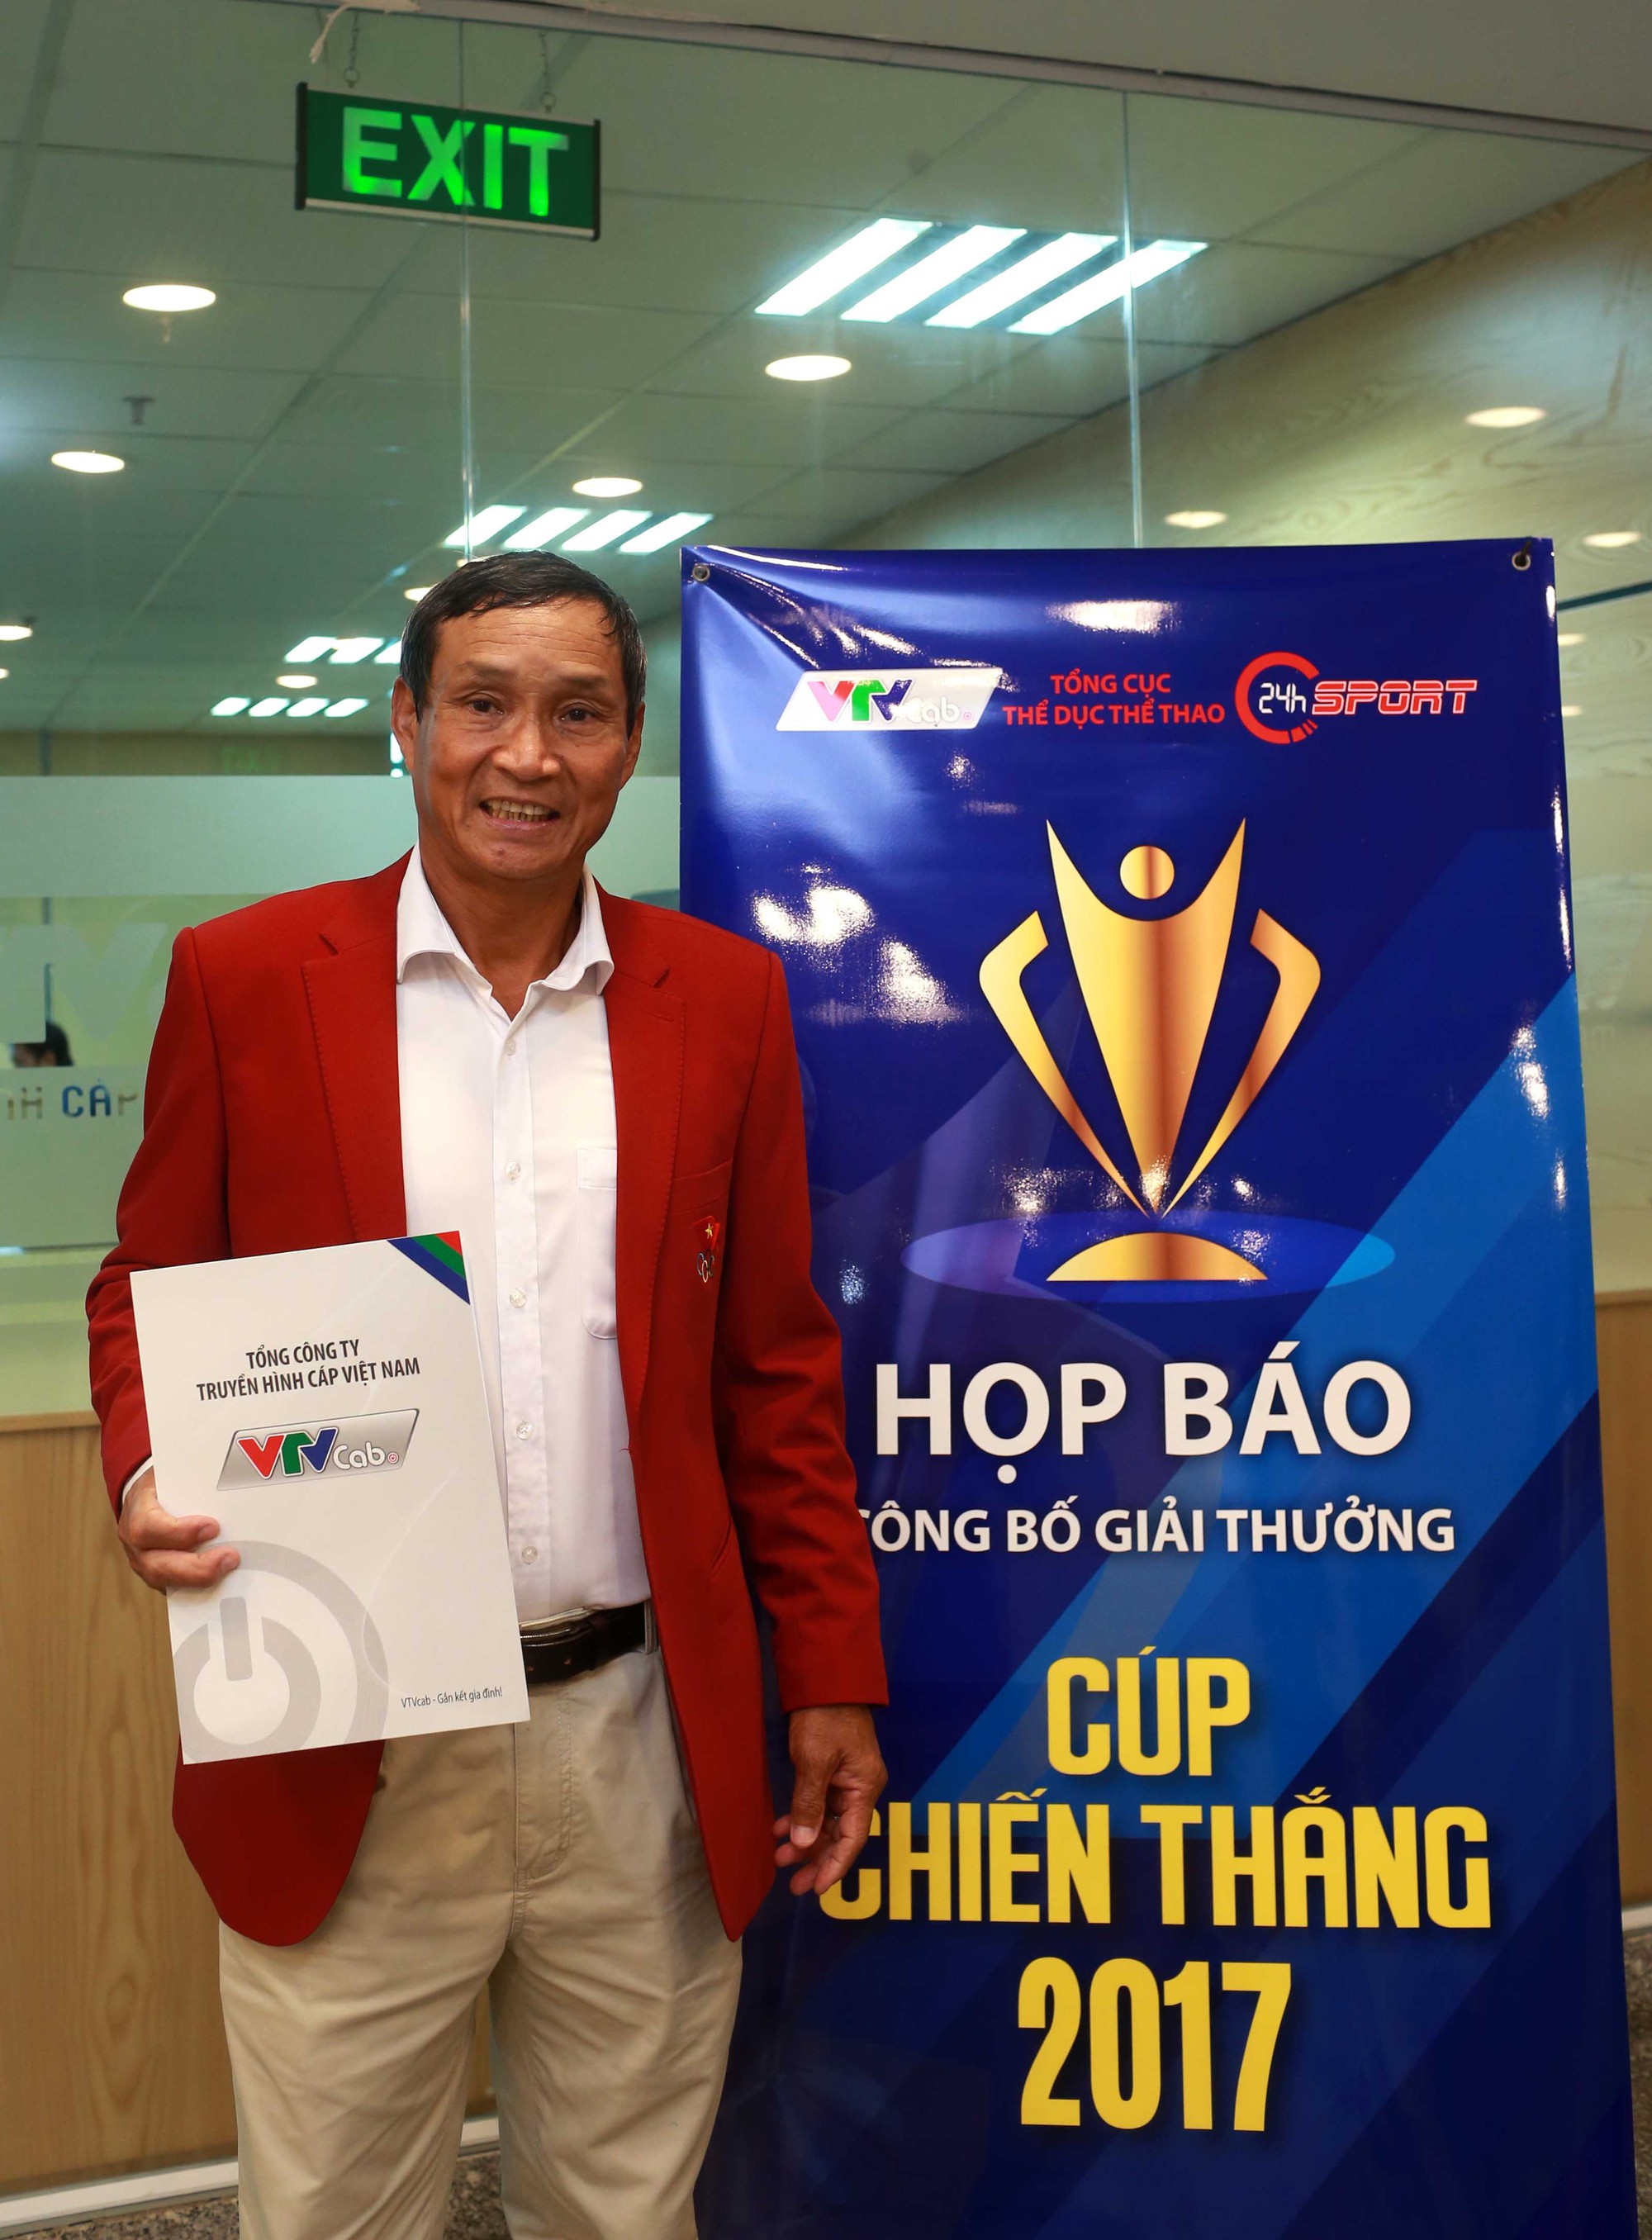 HLV Mai Đức Chung dẫn dắt các cầu thủ nữ Việt Nam lần thứ 5 giành HCV SEA Games, 1 trong 3 khách mời của buổi họp báo Cúp Chiến thắng 2017